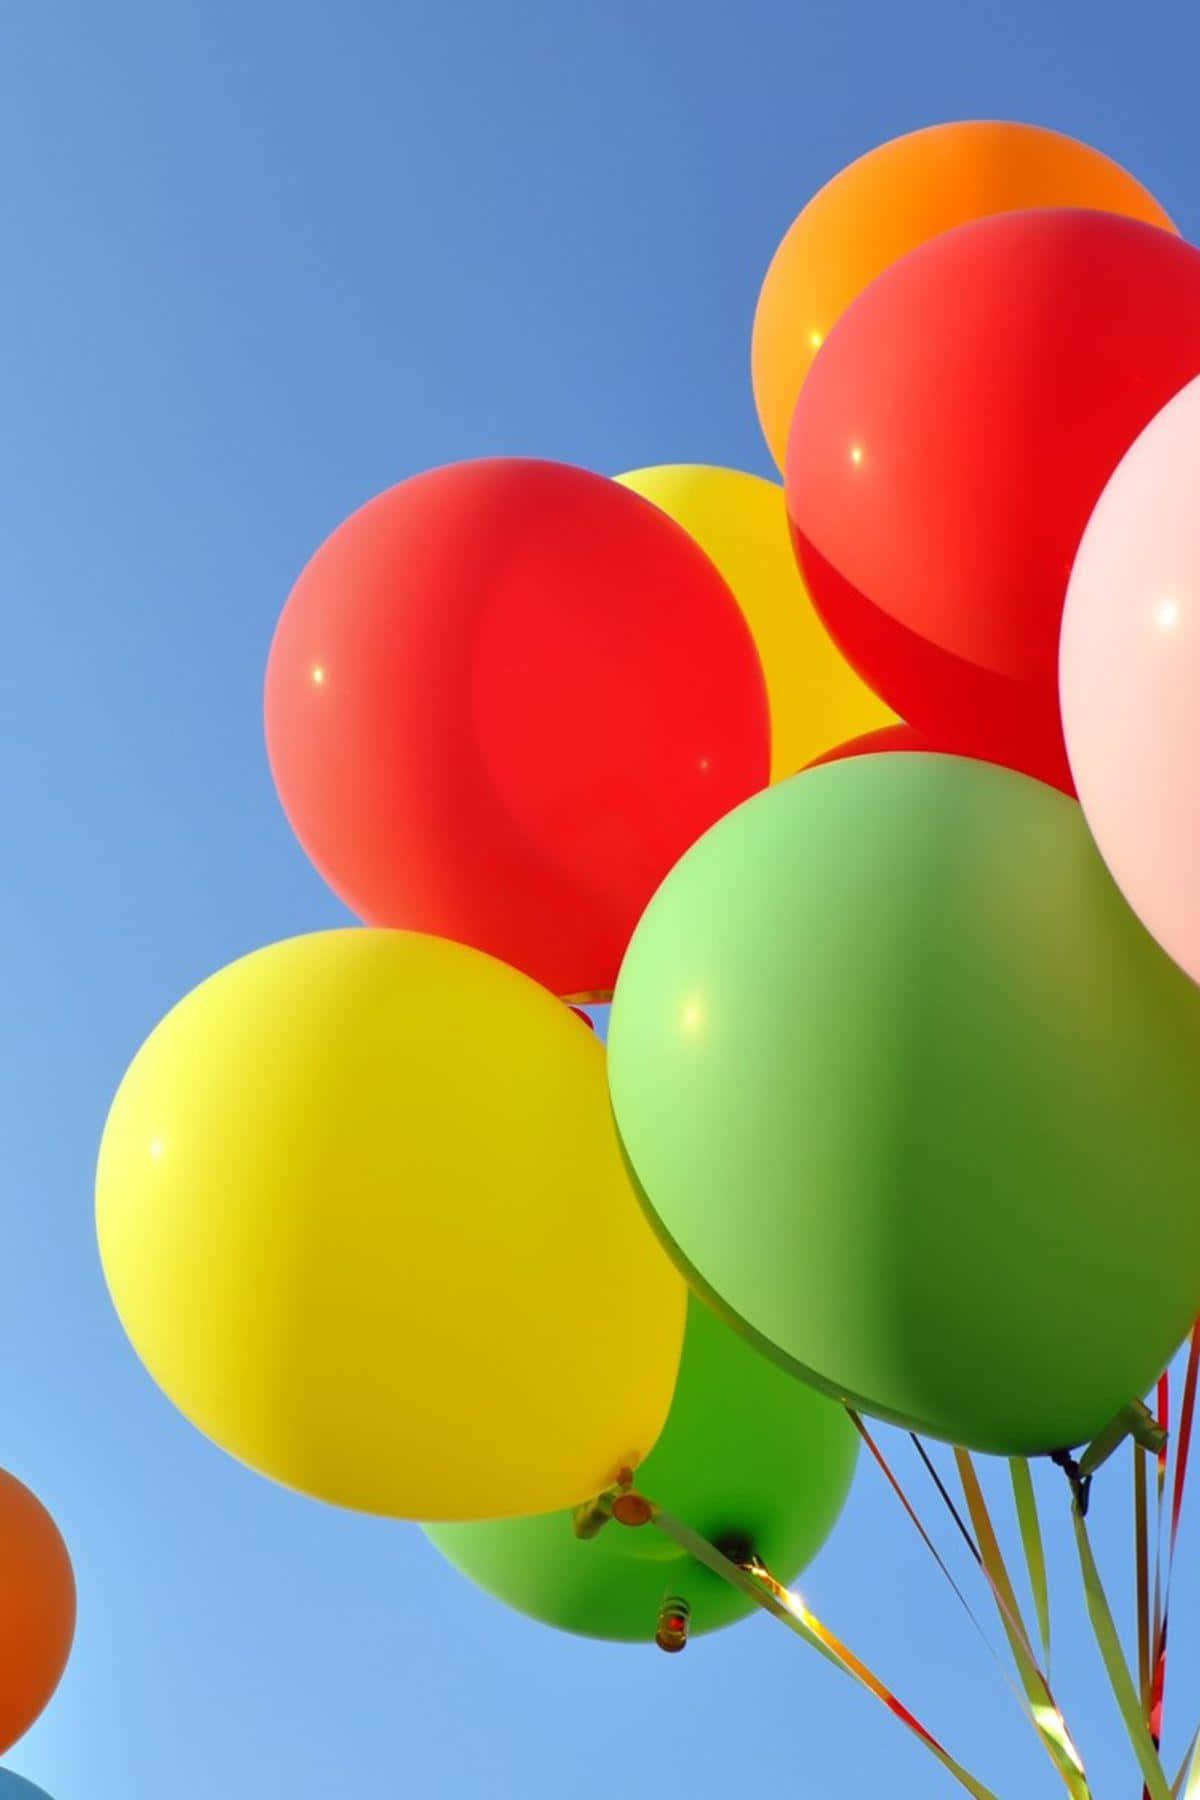 Farverigeballoner, Der Flyver Oppe I Himlen.